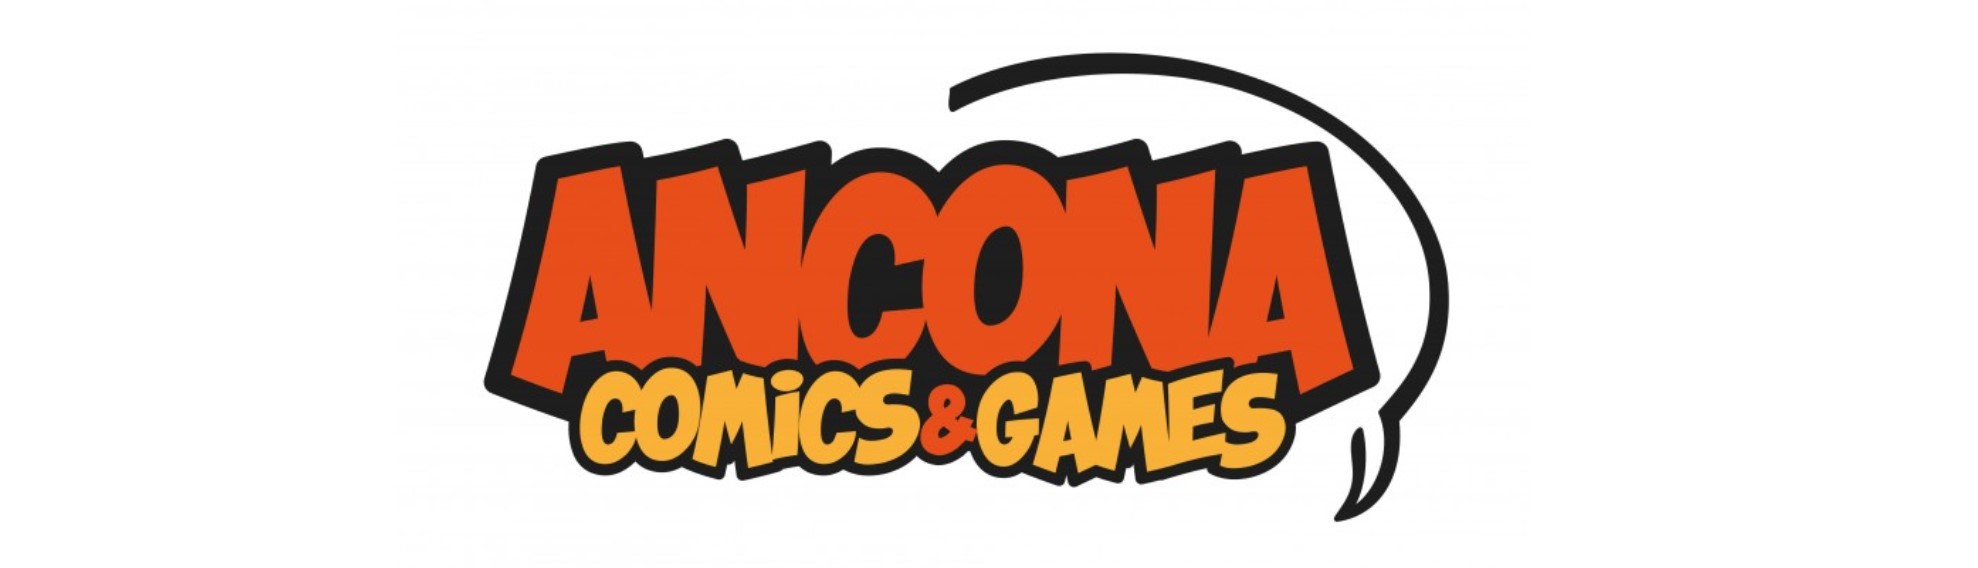 ANCONA COMICS & GAMES